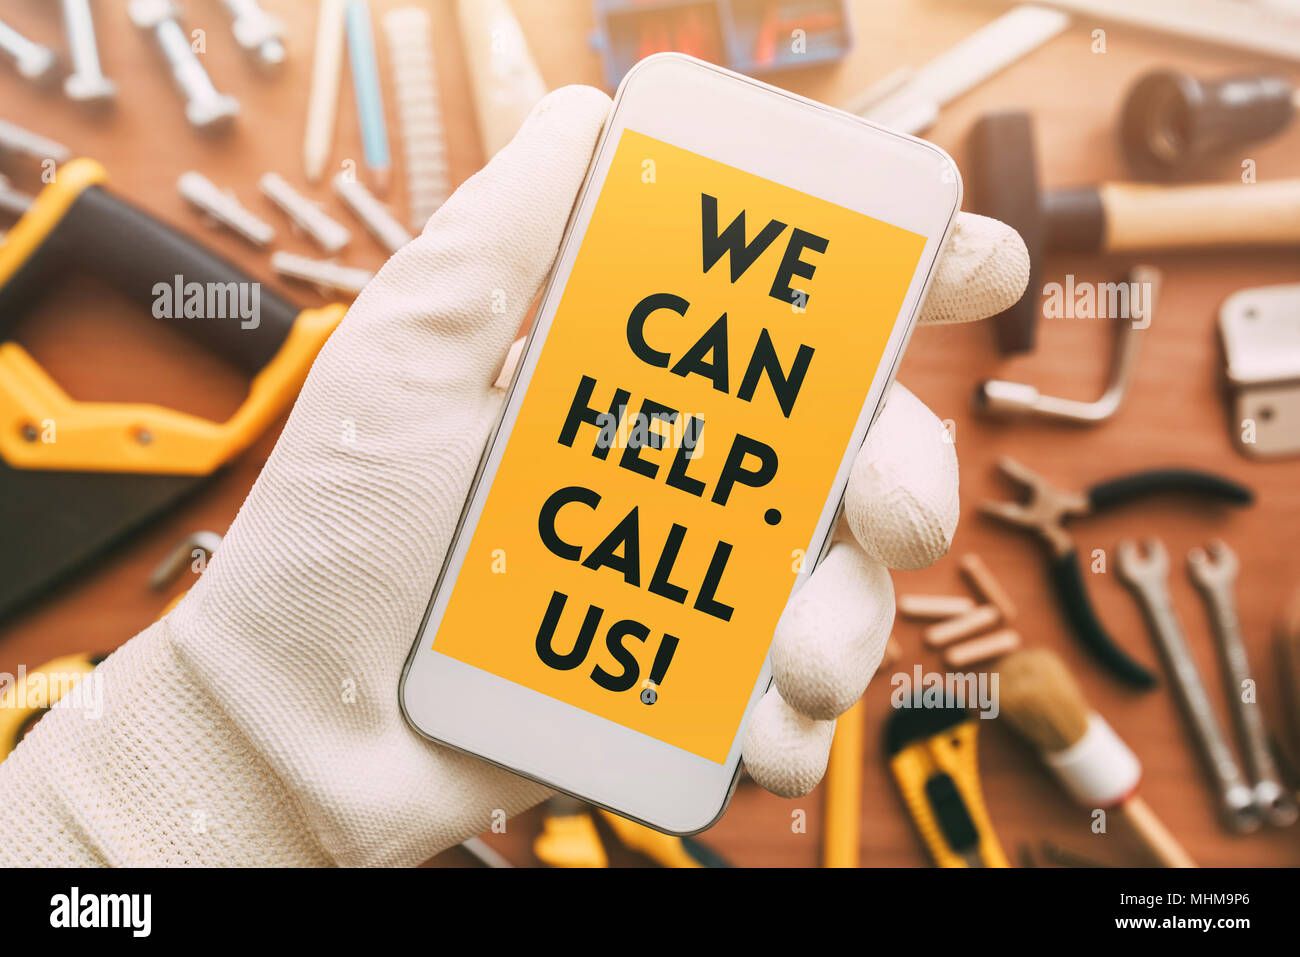 Handyman smart phone app contact message sur l'écran téléphone mole -Nous pouvons vous aider, veuillez nous appeler. Banque D'Images